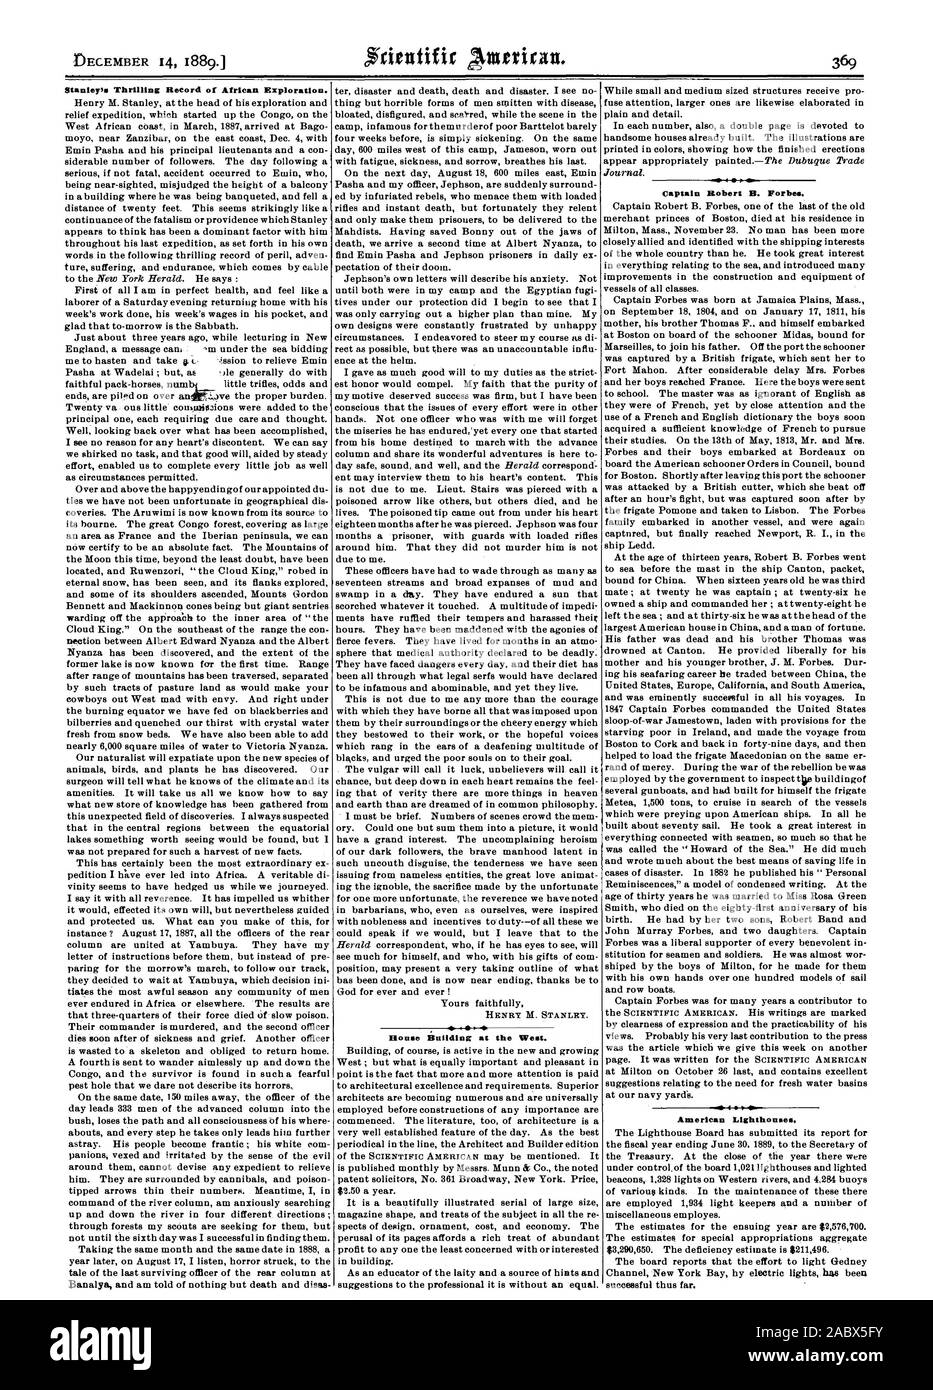 Stanley's spannend Datensatz der Afrikanischen Exploration. HENRY M. STANLEY. Haus Gebäude im Westen. g4 1. Am-amerikanischen Leuchttürme., Scientific American, 1889-12-14 Stockfoto